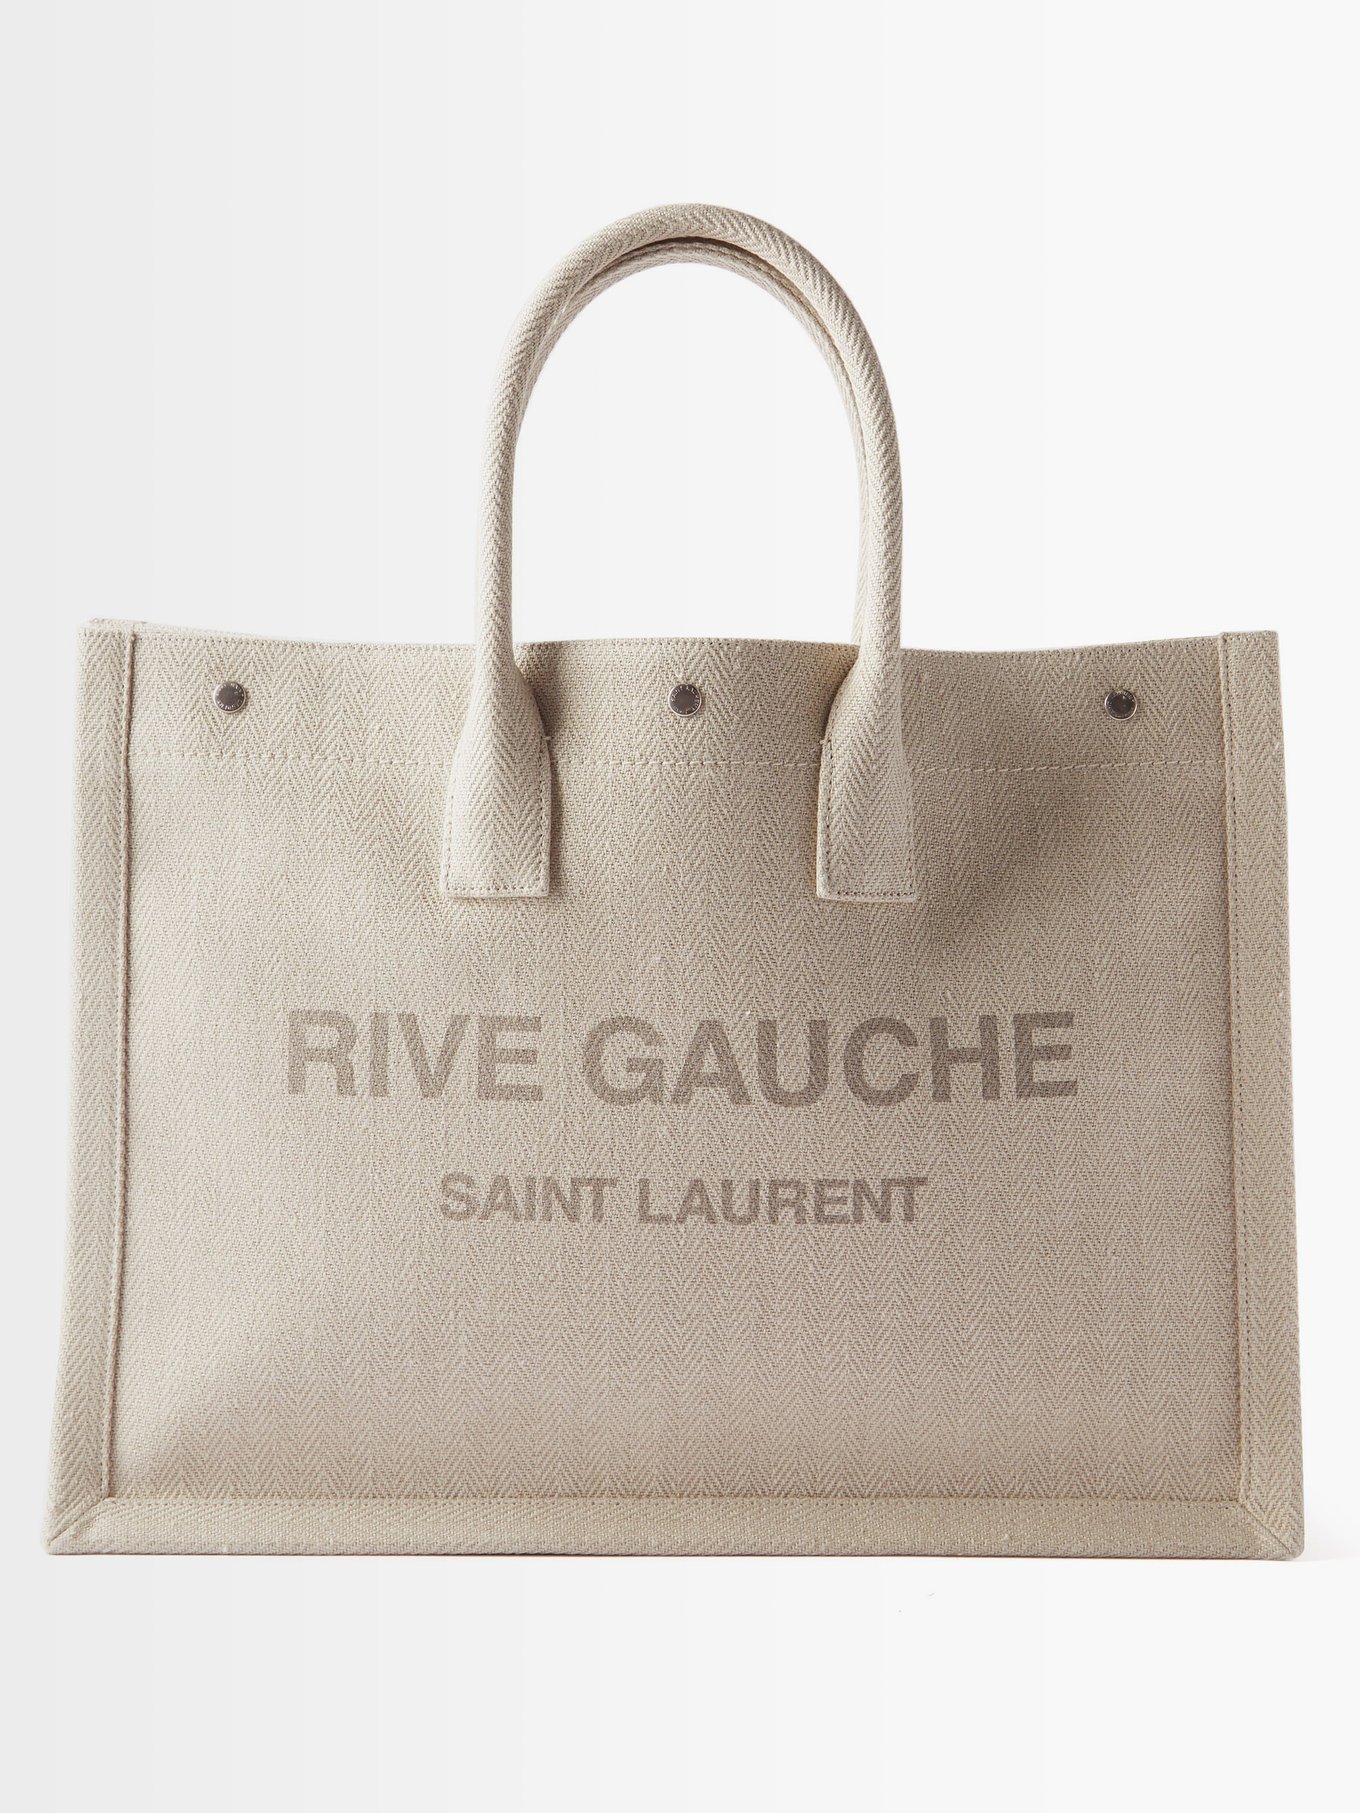 Beige Rive Gauche logo-print herringbone-twill tote bag